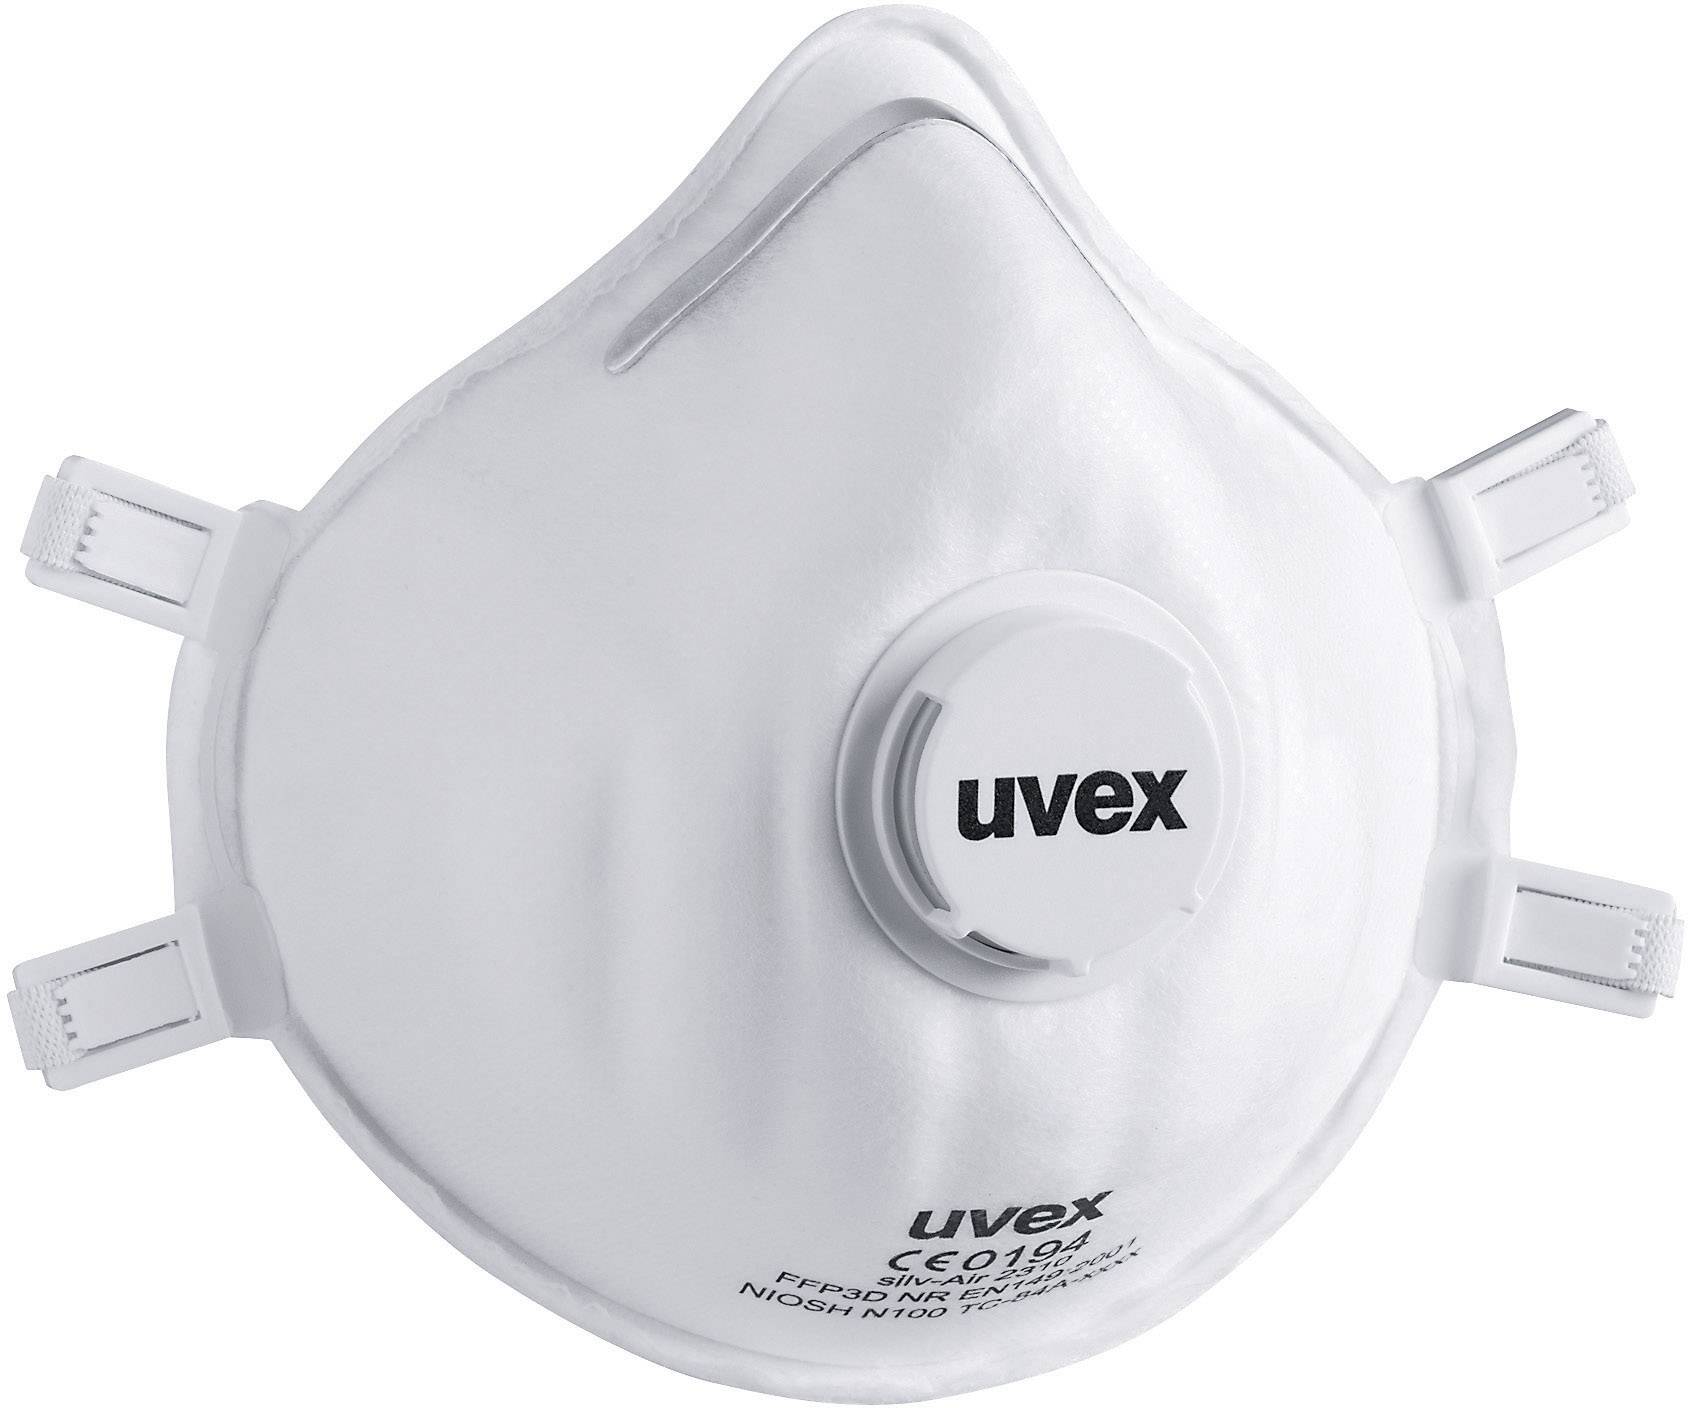 UVEX Atemschutzmaske silv-air classic 2310 8732310 Filterklasse/Schutzstufe: FFP 3 15 Stück (8732310